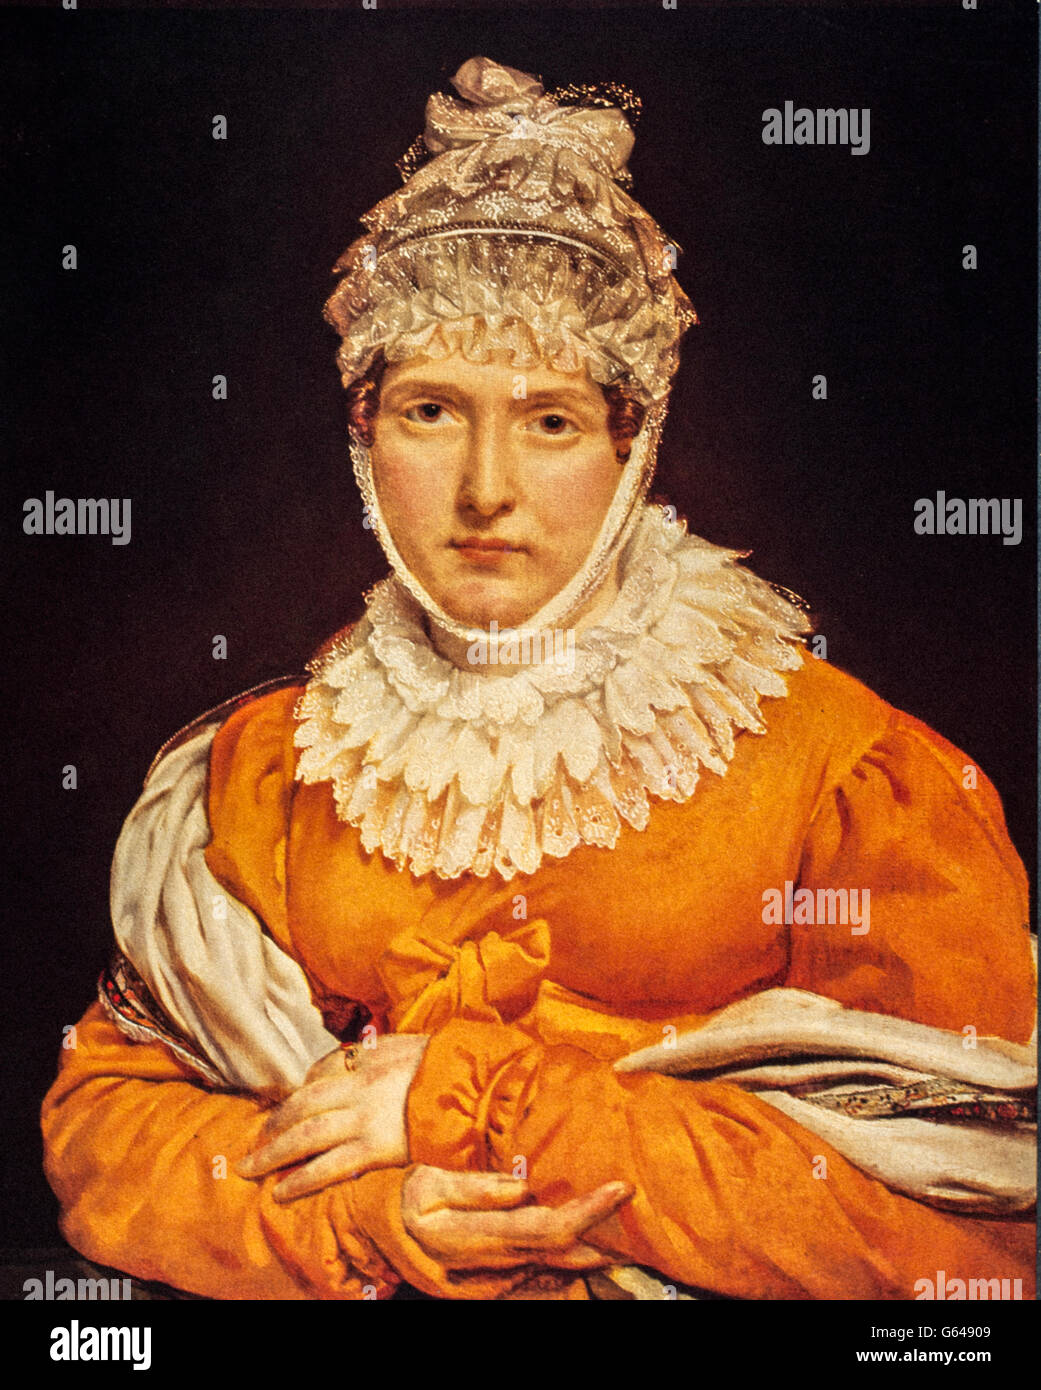 Jeanne Françoise Julie Adélaïde Bernard, bekannt als Juliette Recamier oder Madame Recamier (Lyon, 3. Dezember 1777 - Paris, 11. Mai 1849), war ein berühmter französischer Salon in der Ära des Verzeichnisses und das erste Reich. Stockfoto